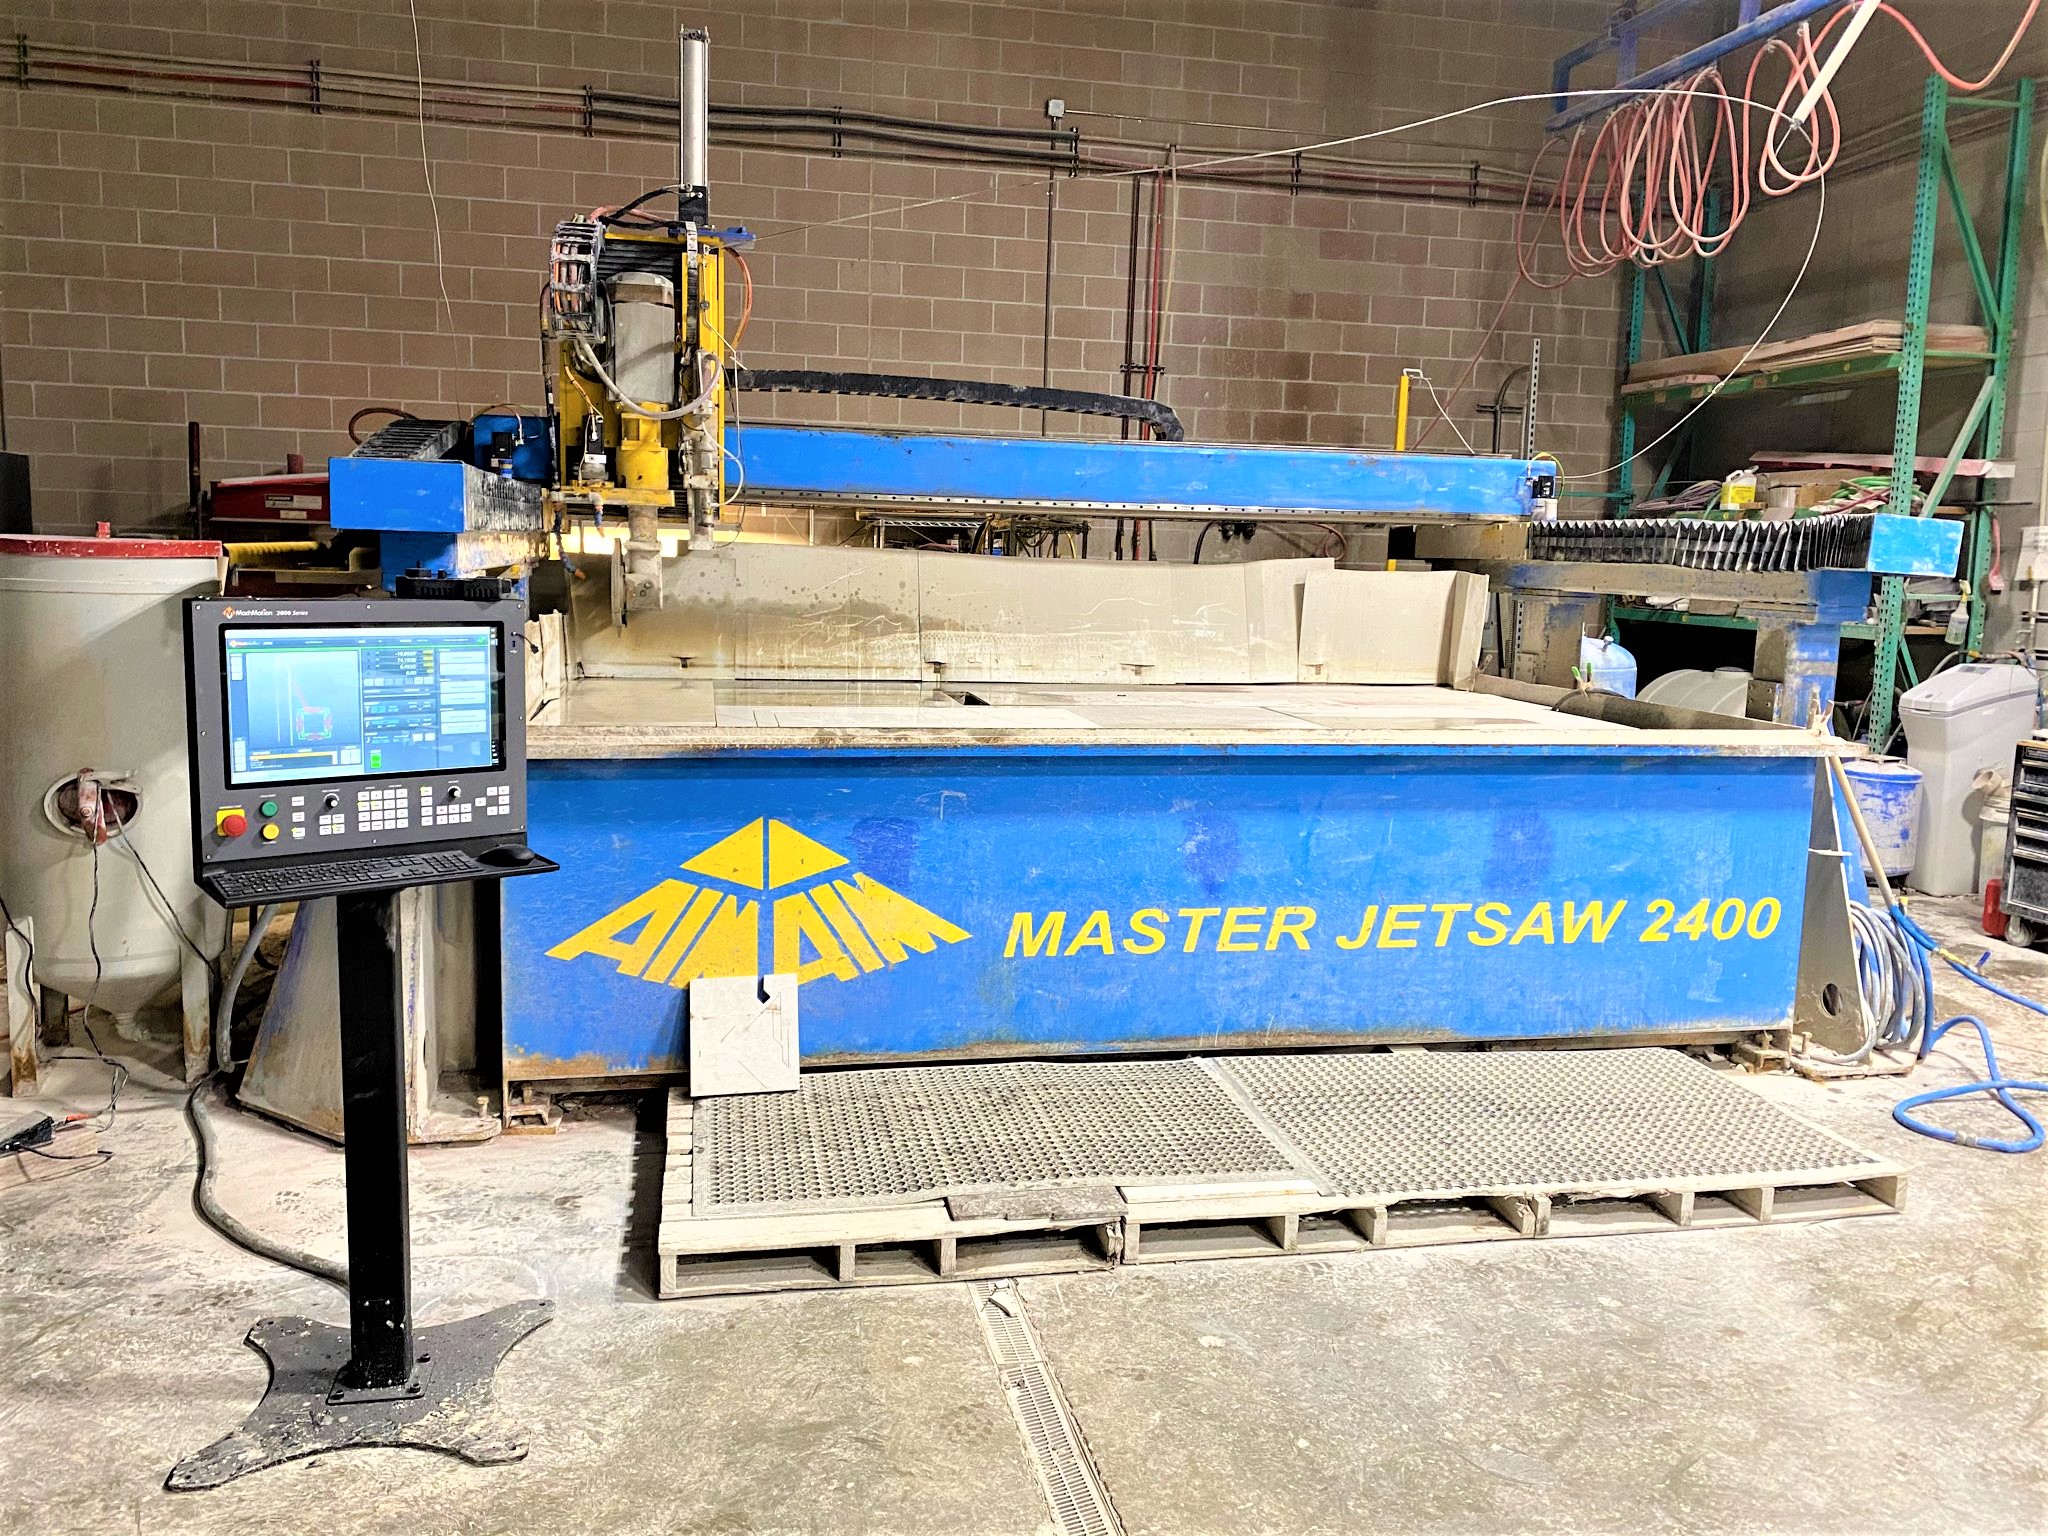 Master JETSAW 2400 Waterjet-Granite cutting saw